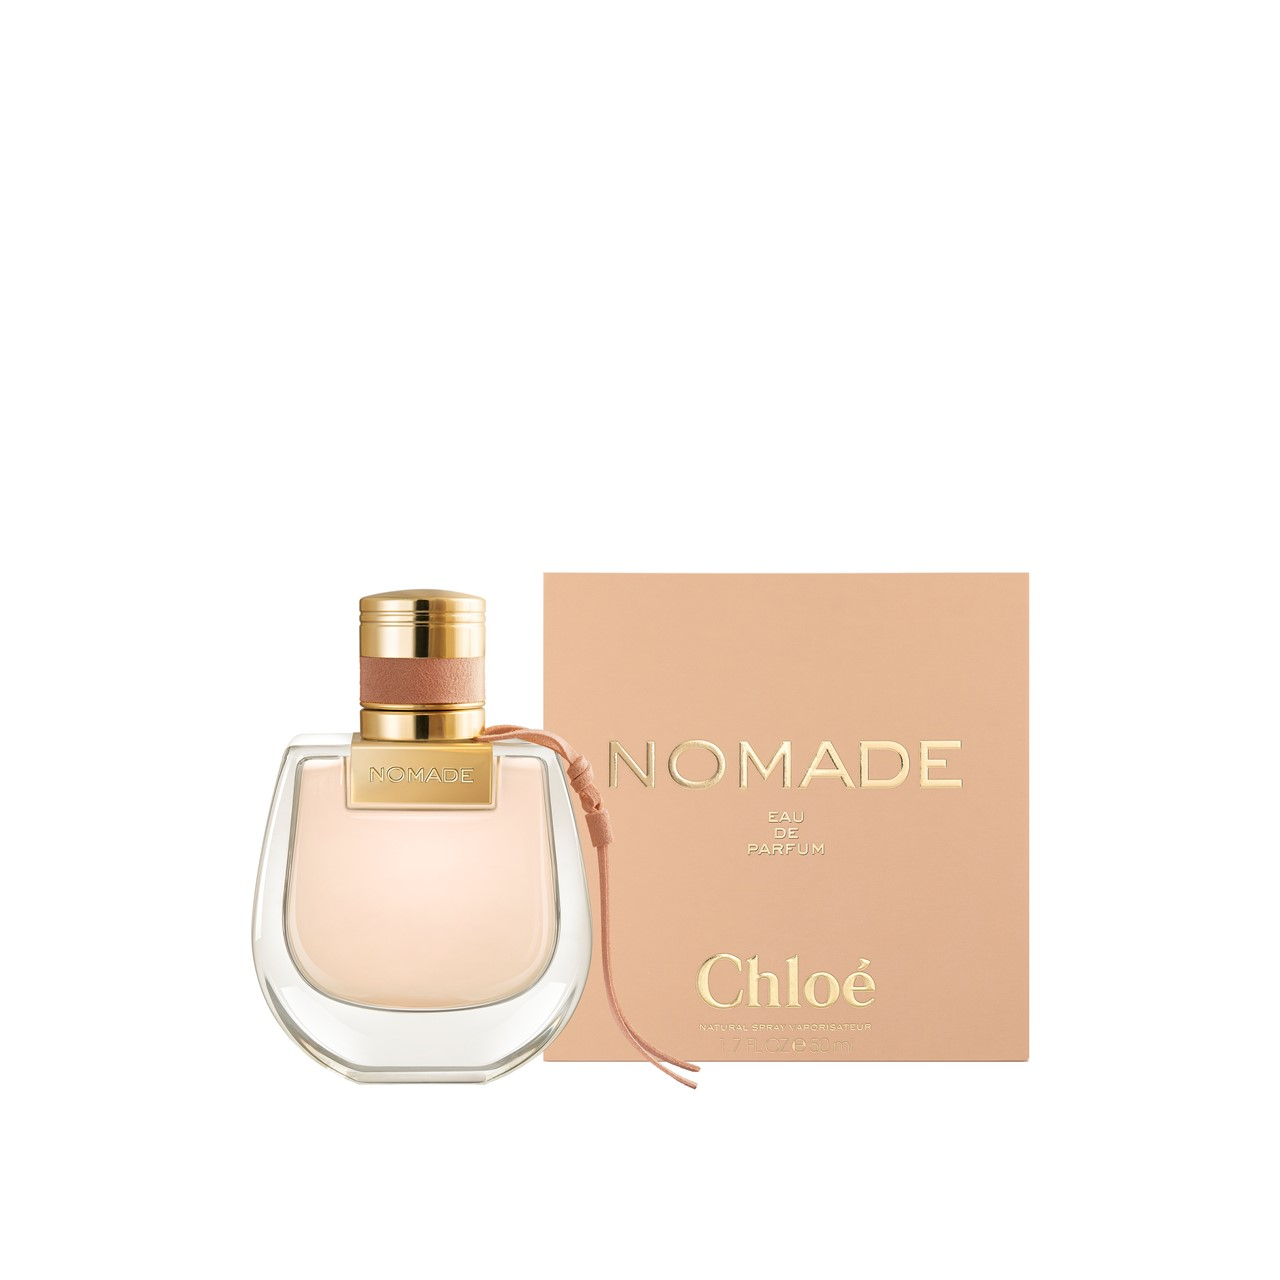 Buy Chloé Nomade Eau oz) USA · 50ml de Parfum (1.7fl